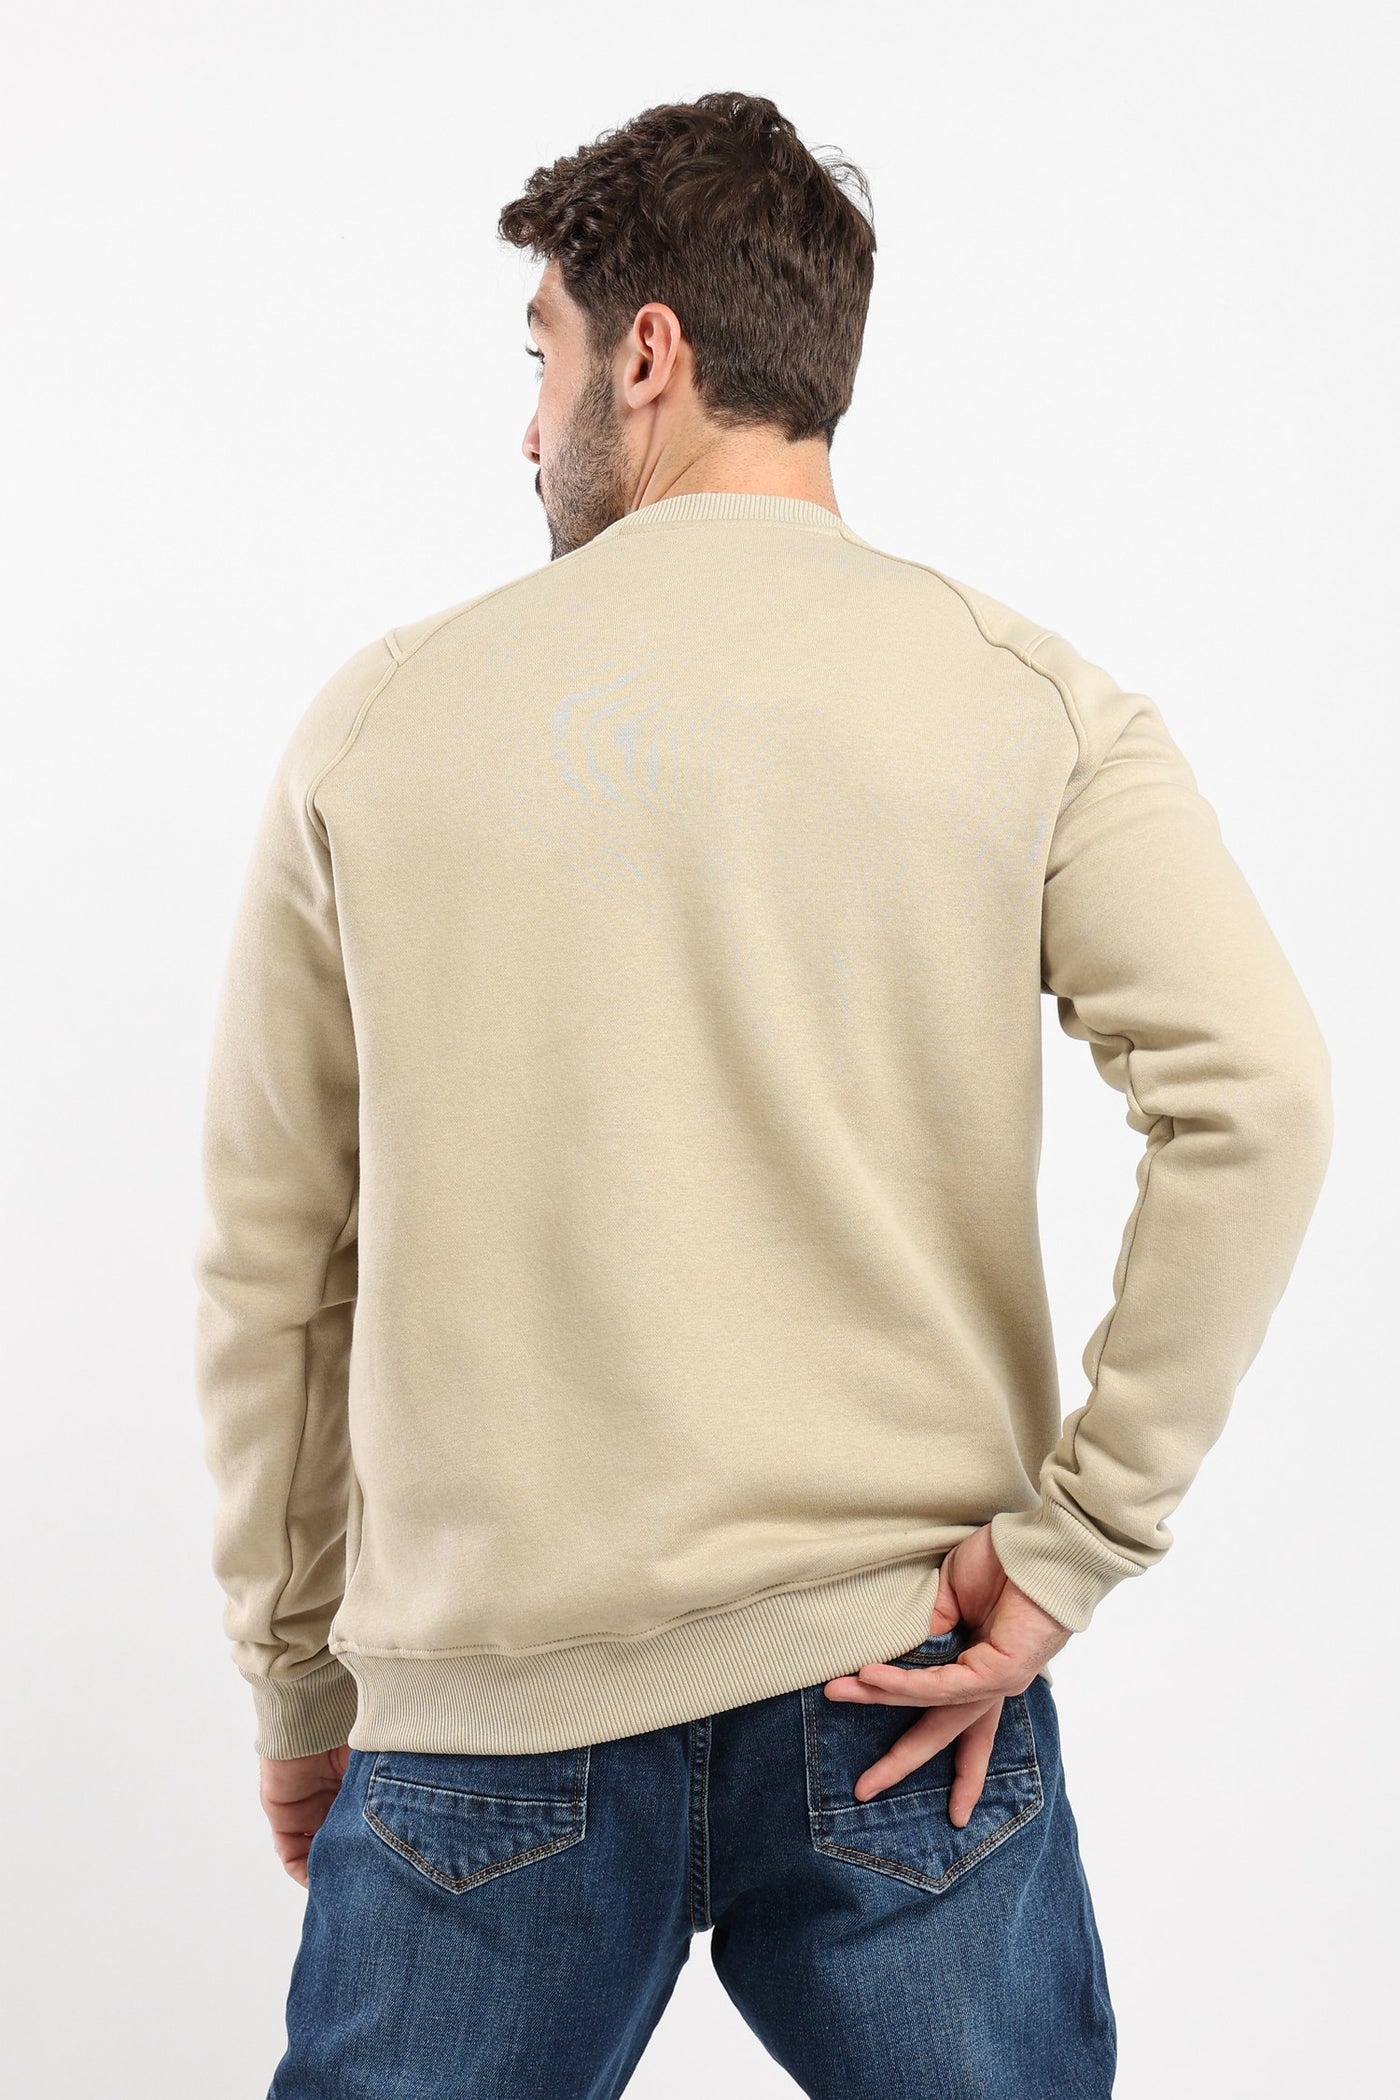 Sweatshirt - Side Panel with Pocket